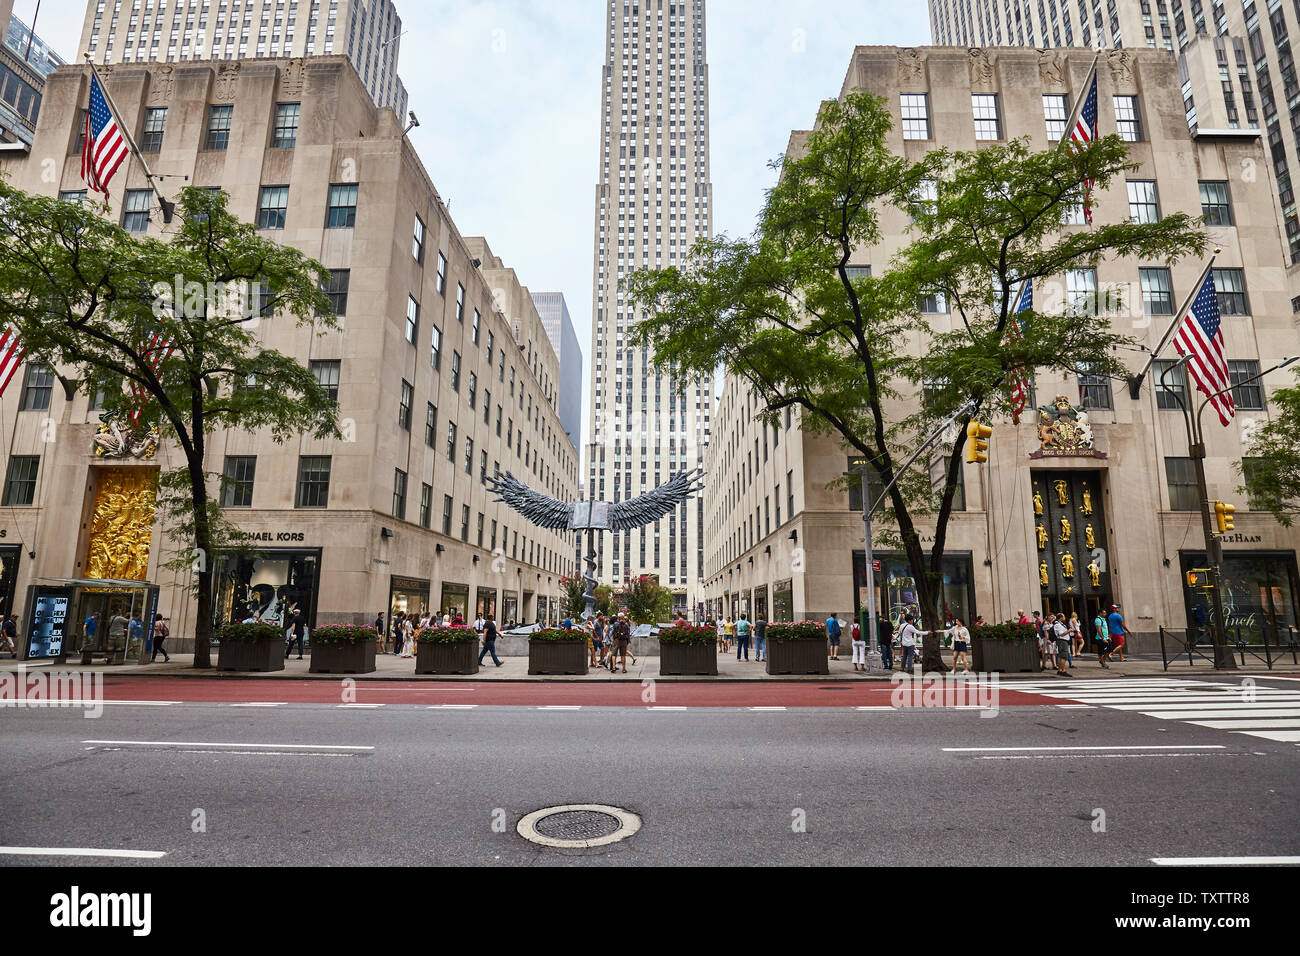 New York, Stati Uniti d'America - Luglio 04, 2018: Vista della Quinta Avenue, noto anche come Millionaire Row, è uno del mondo più costose le strade. Foto Stock